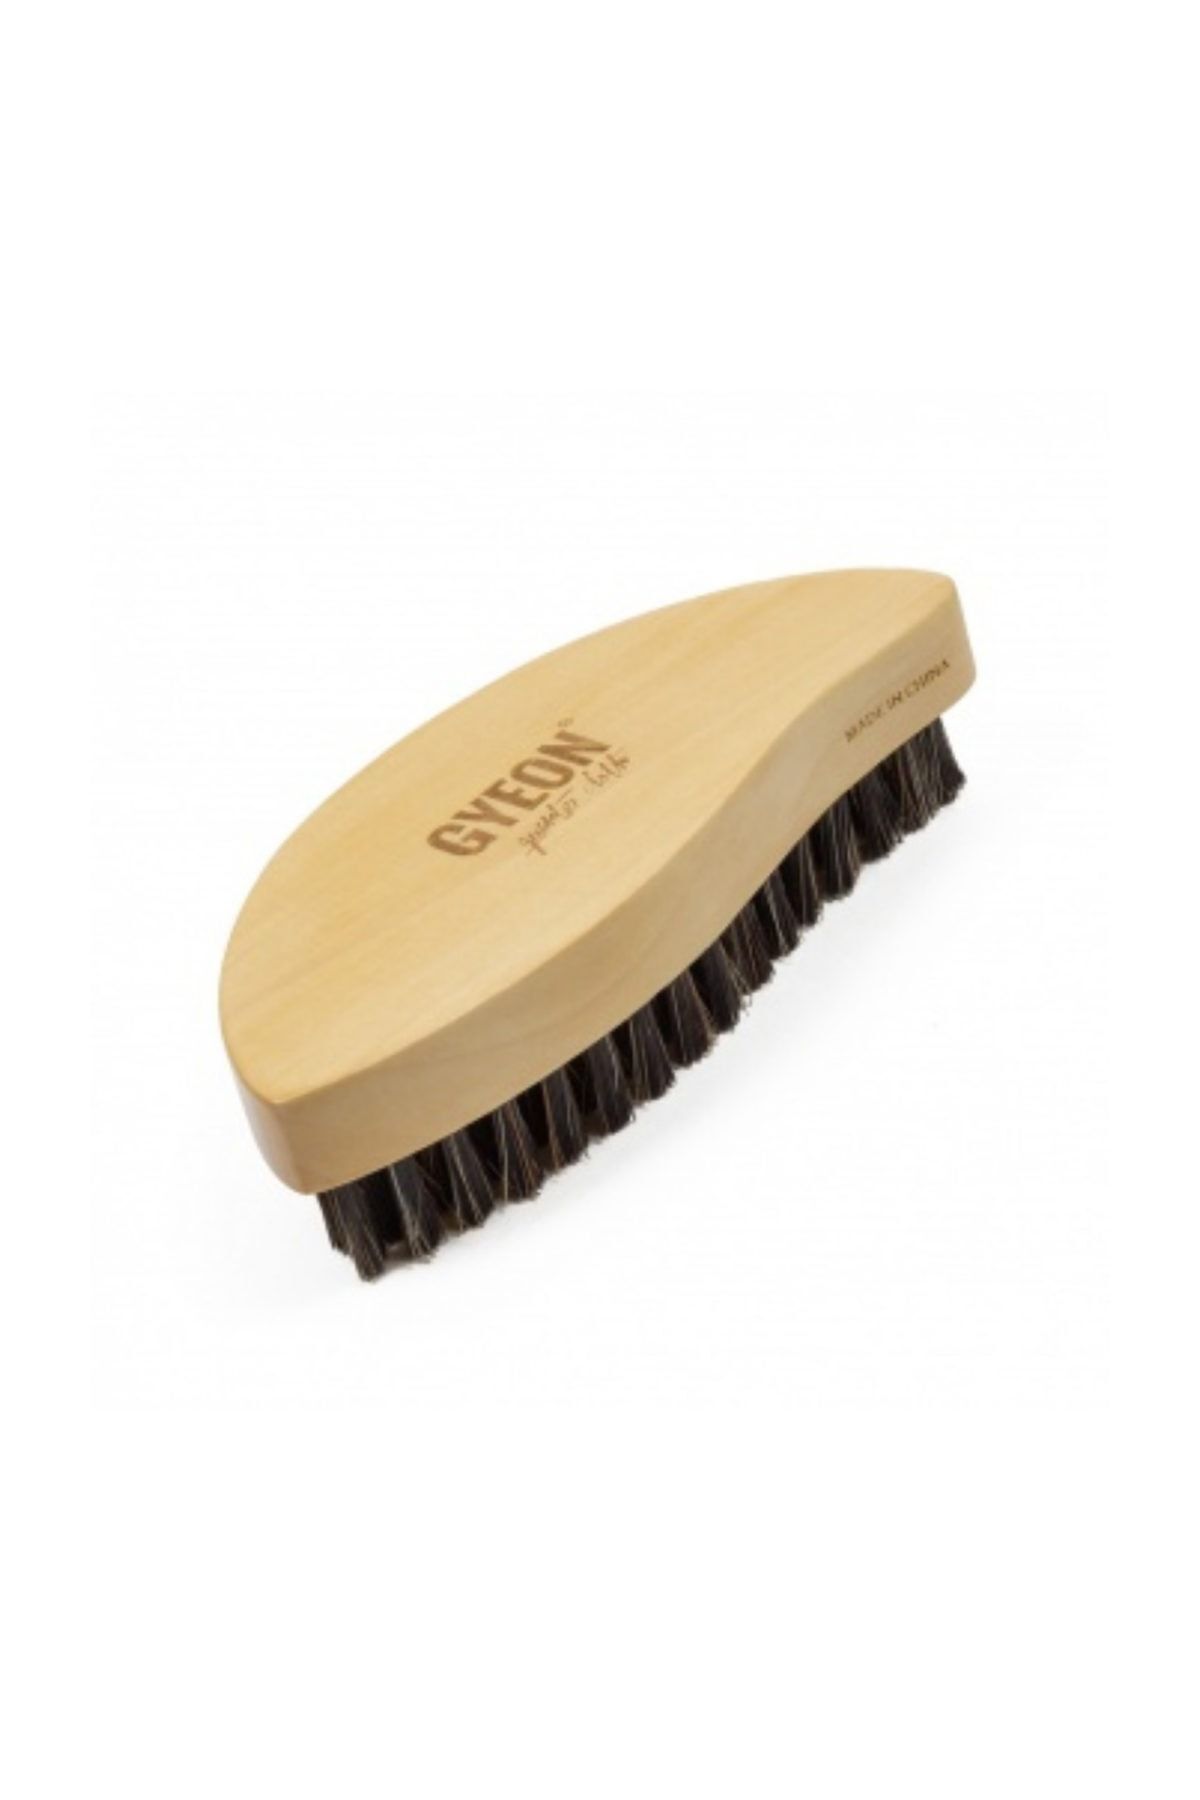 Menzerna Gyeon Q2m Leather Brush Deri Temizleme Fırçası